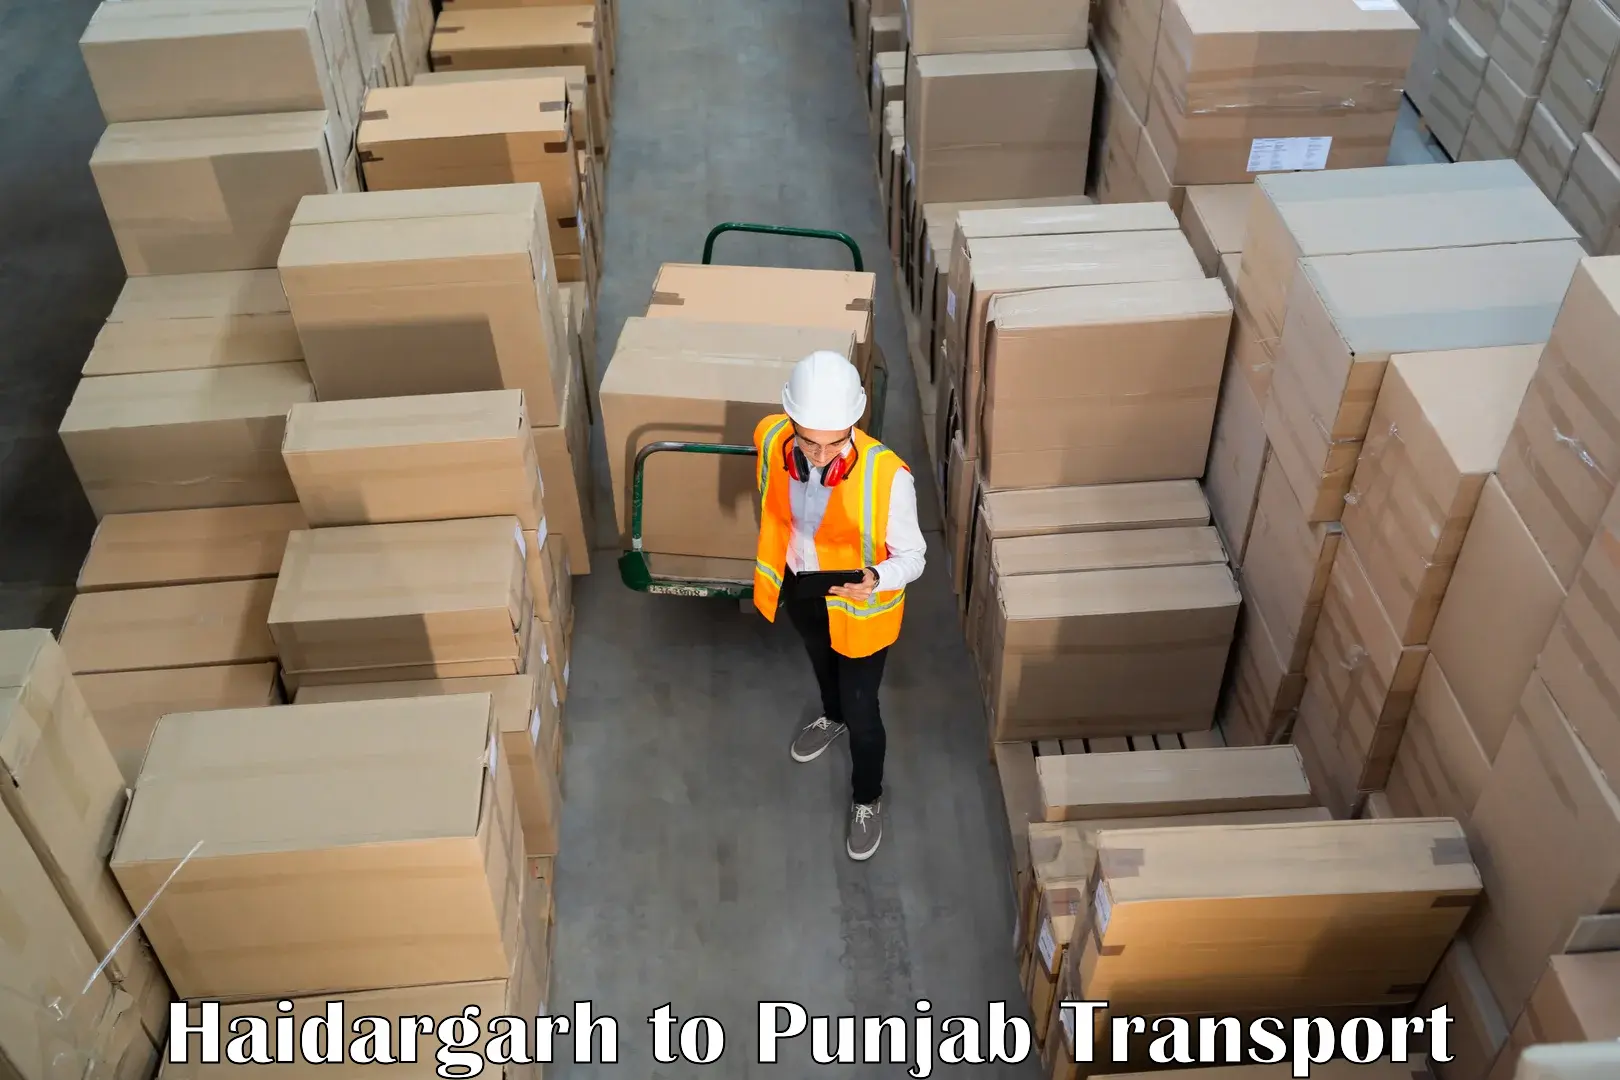 Delivery service Haidargarh to Dinanagar